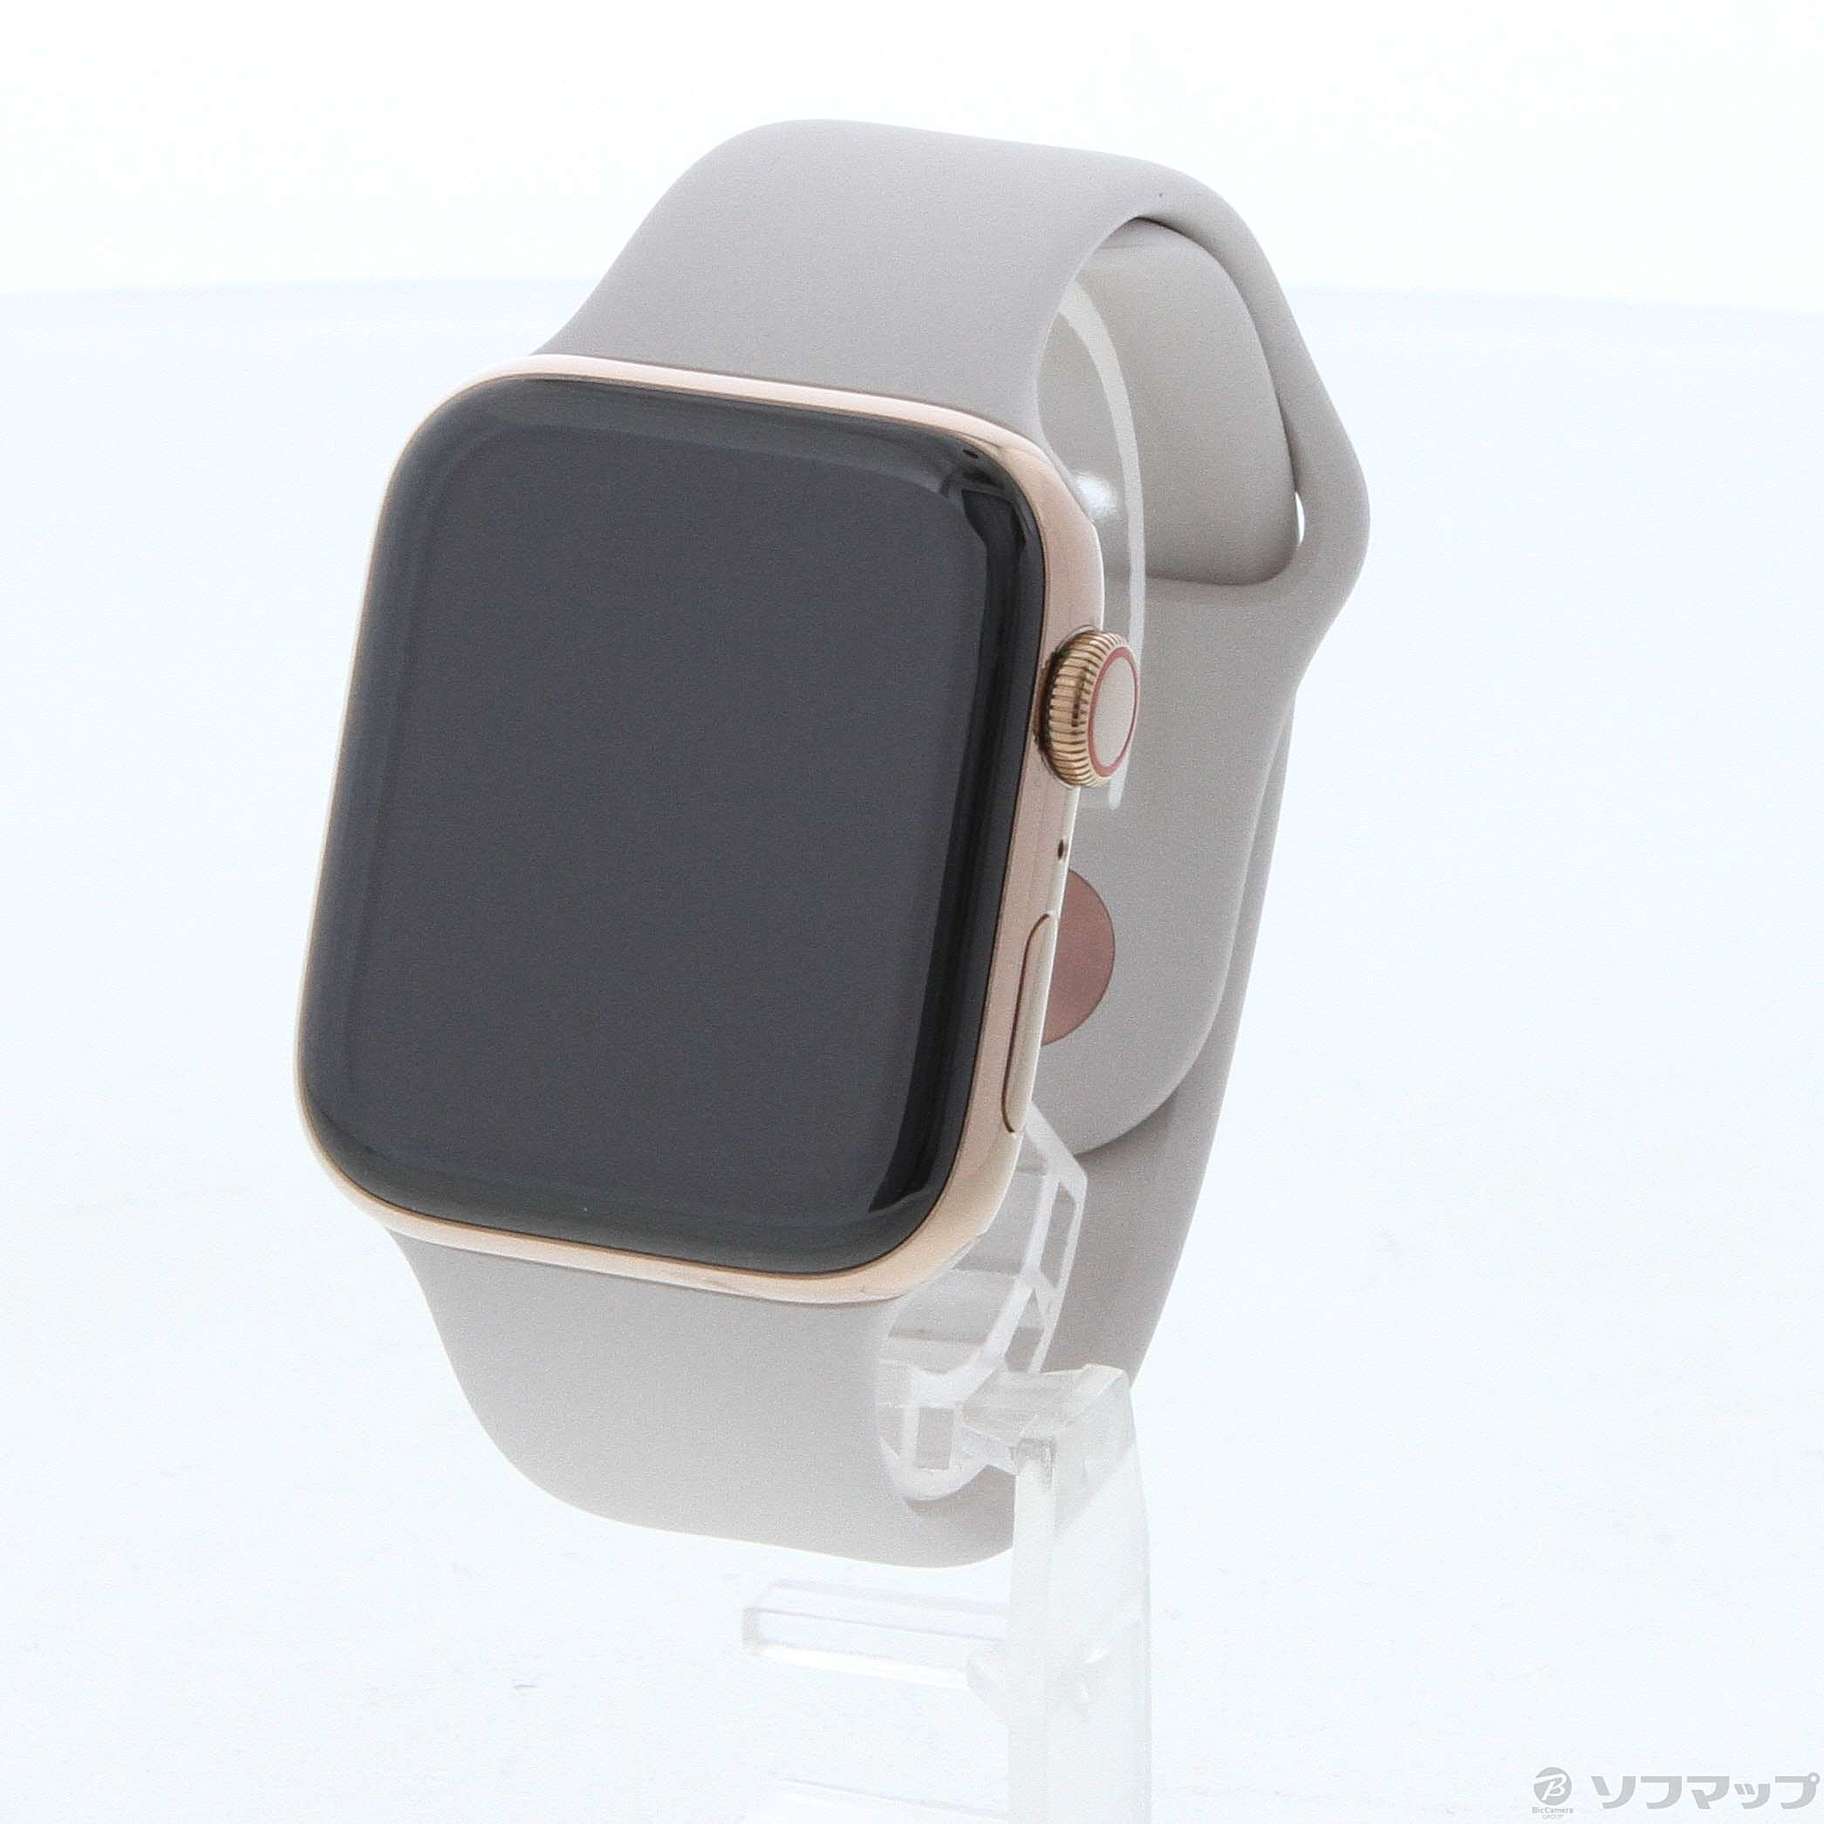 セール対象品 Apple Watch Series 4 GPS + Cellular 44mm ゴールドステンレススチールケース ストーンスポーツバンド